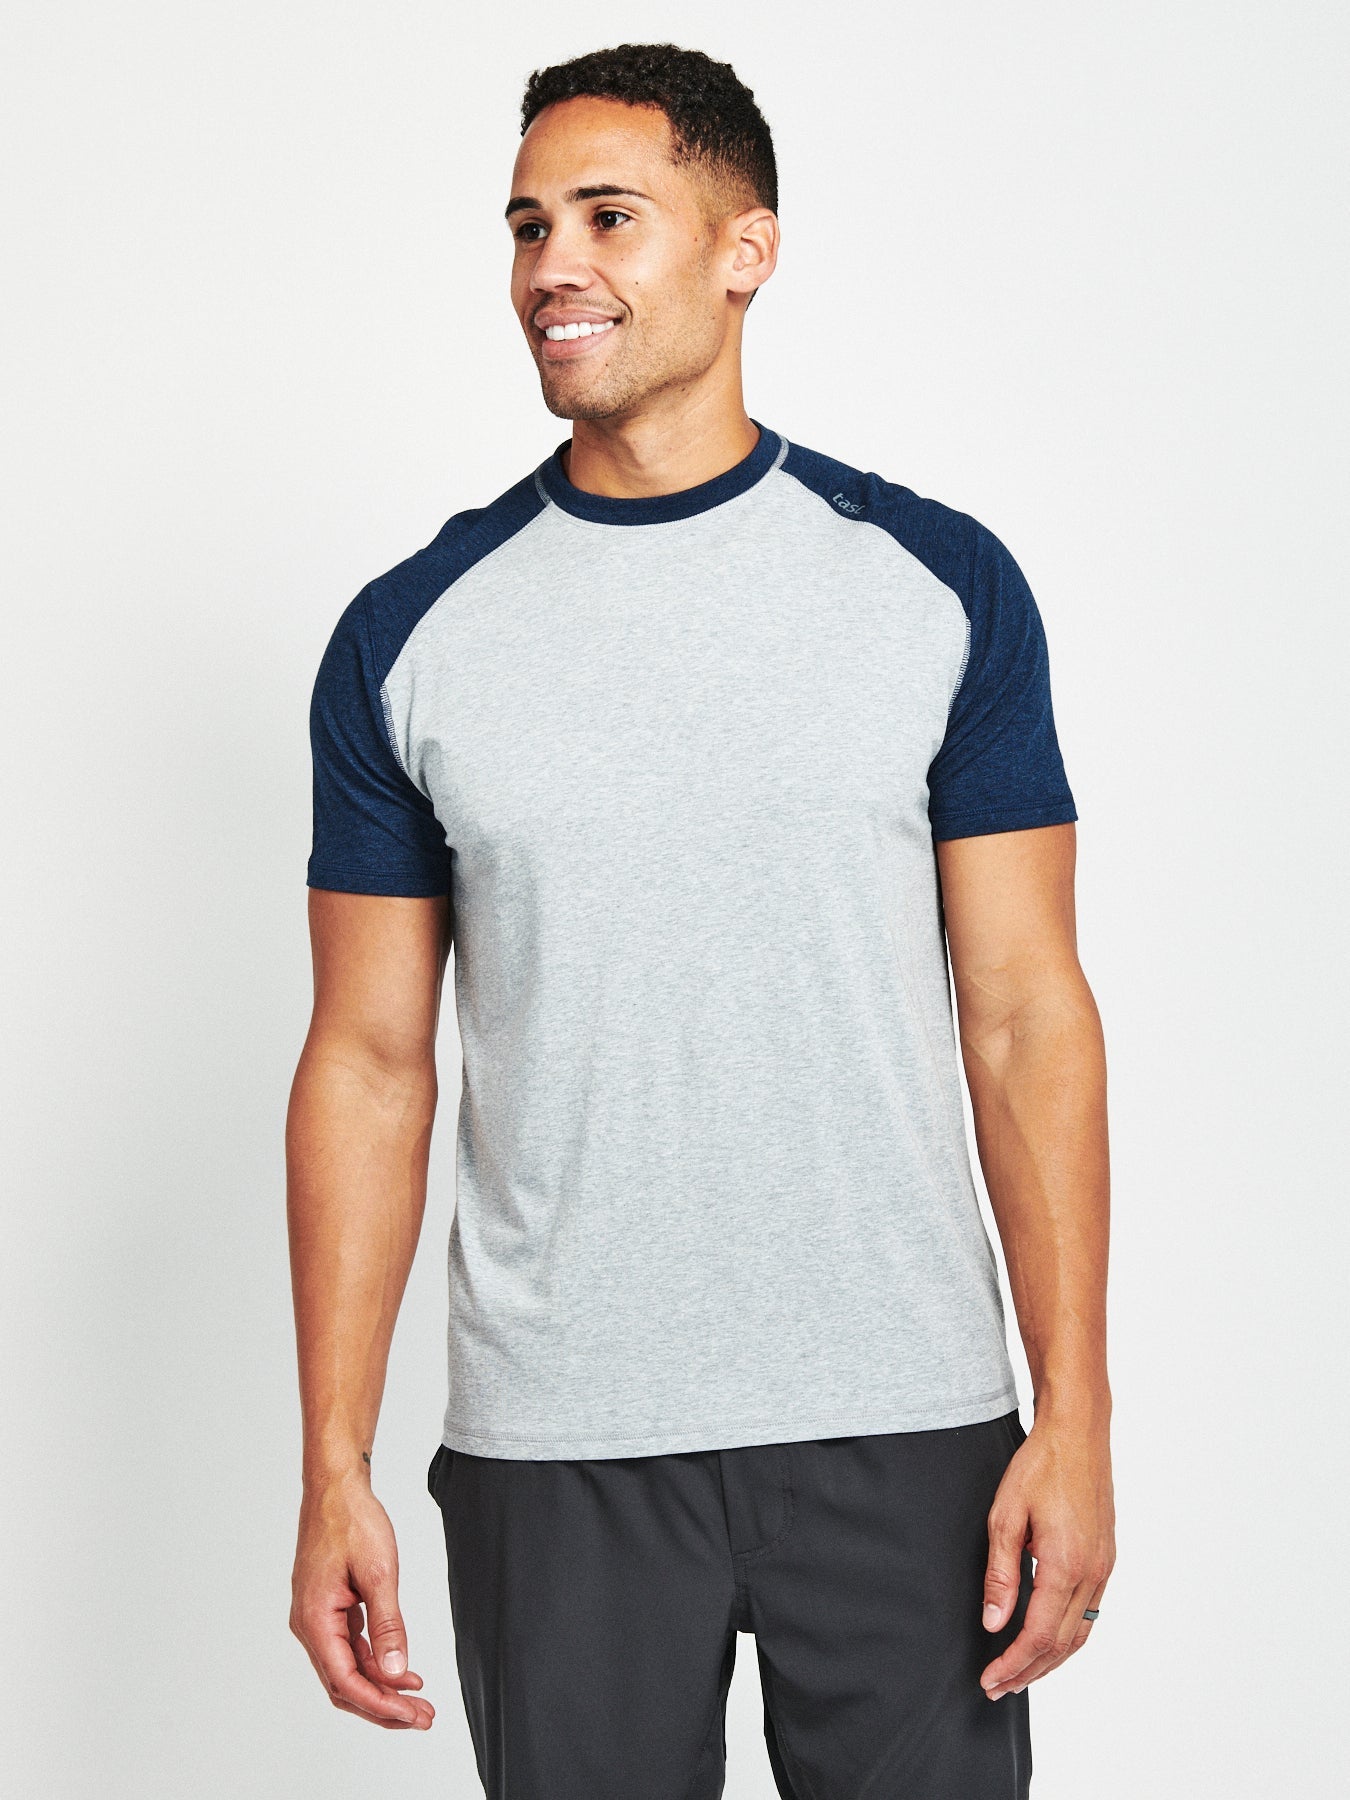 Carrollton Fitness V-Neck T-Shirt